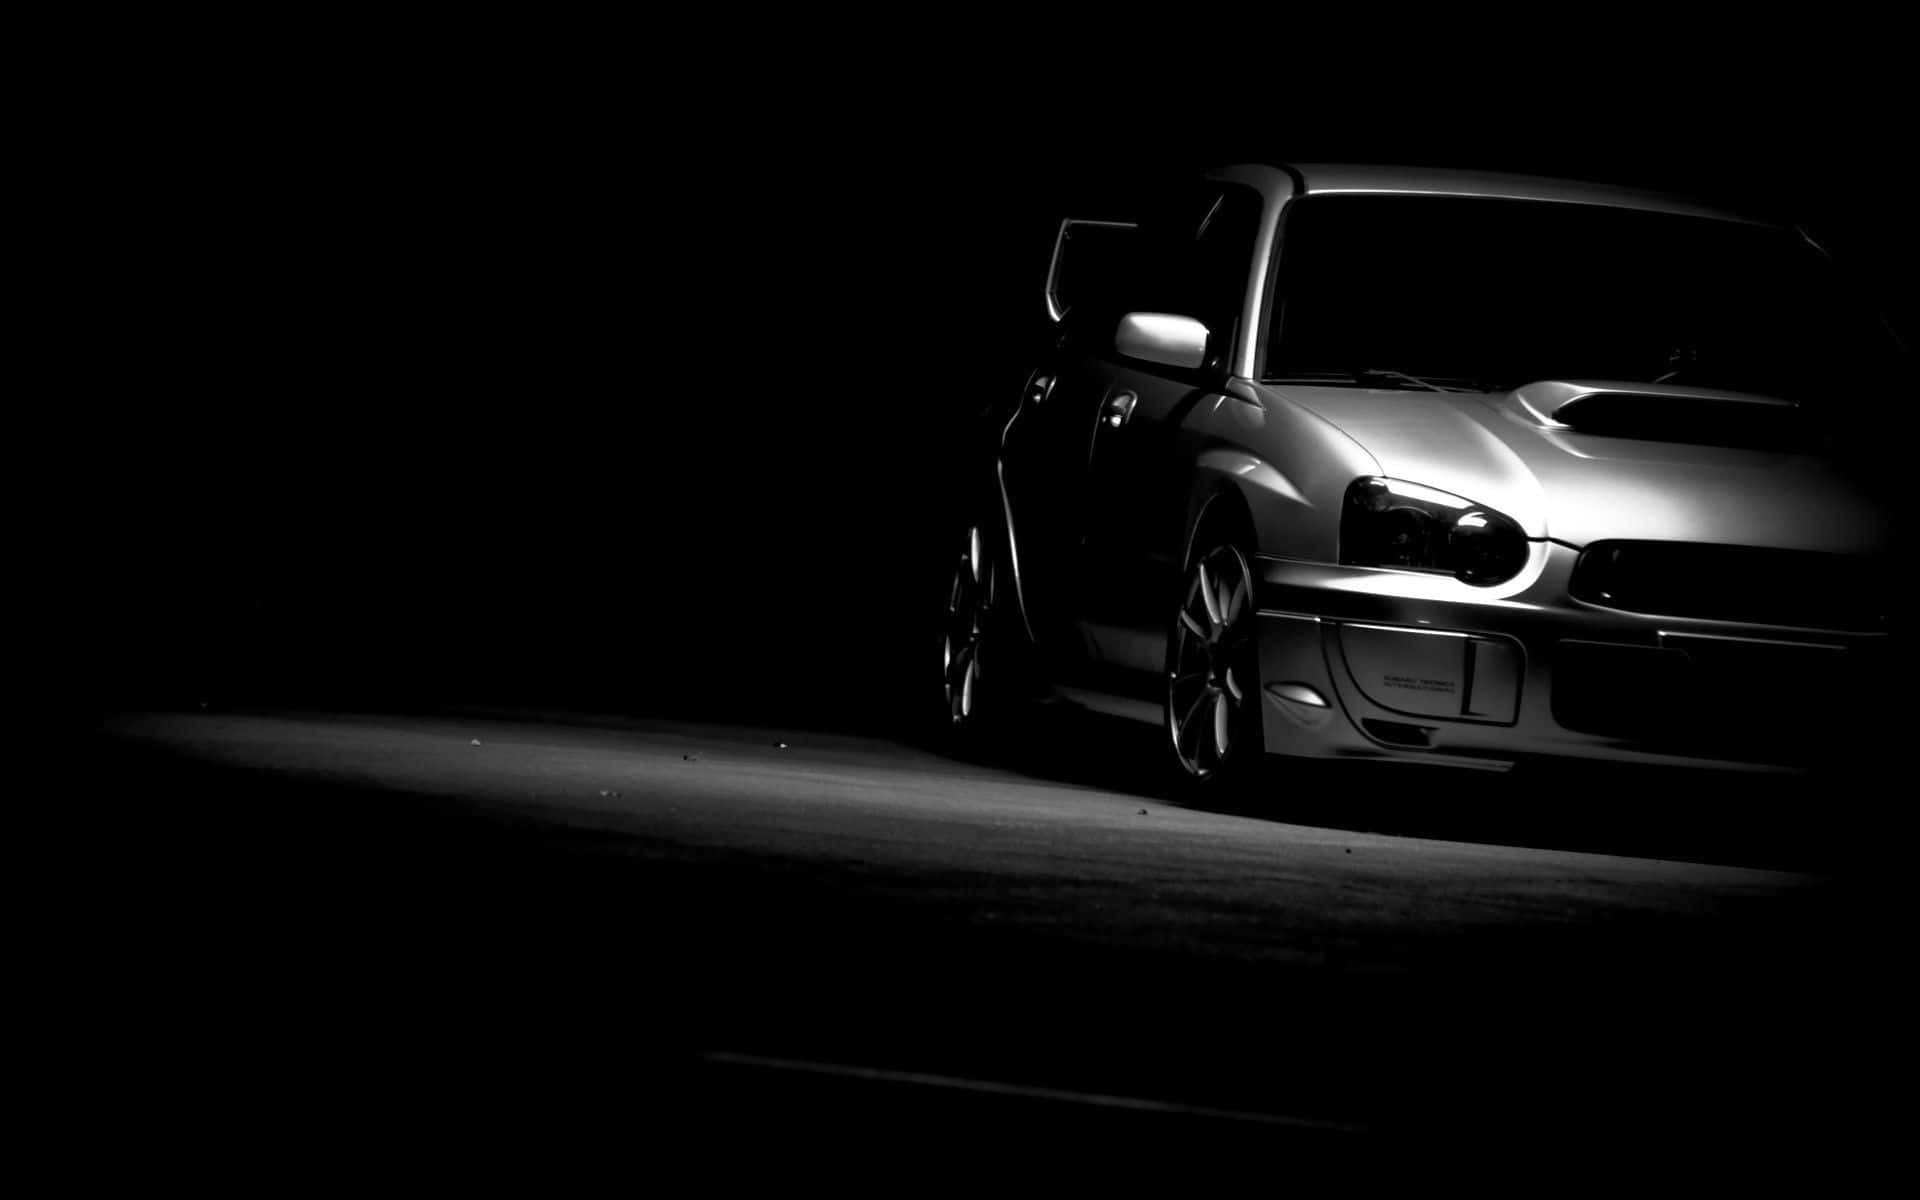 Etsort-hvidt Billede Af En Subaru.